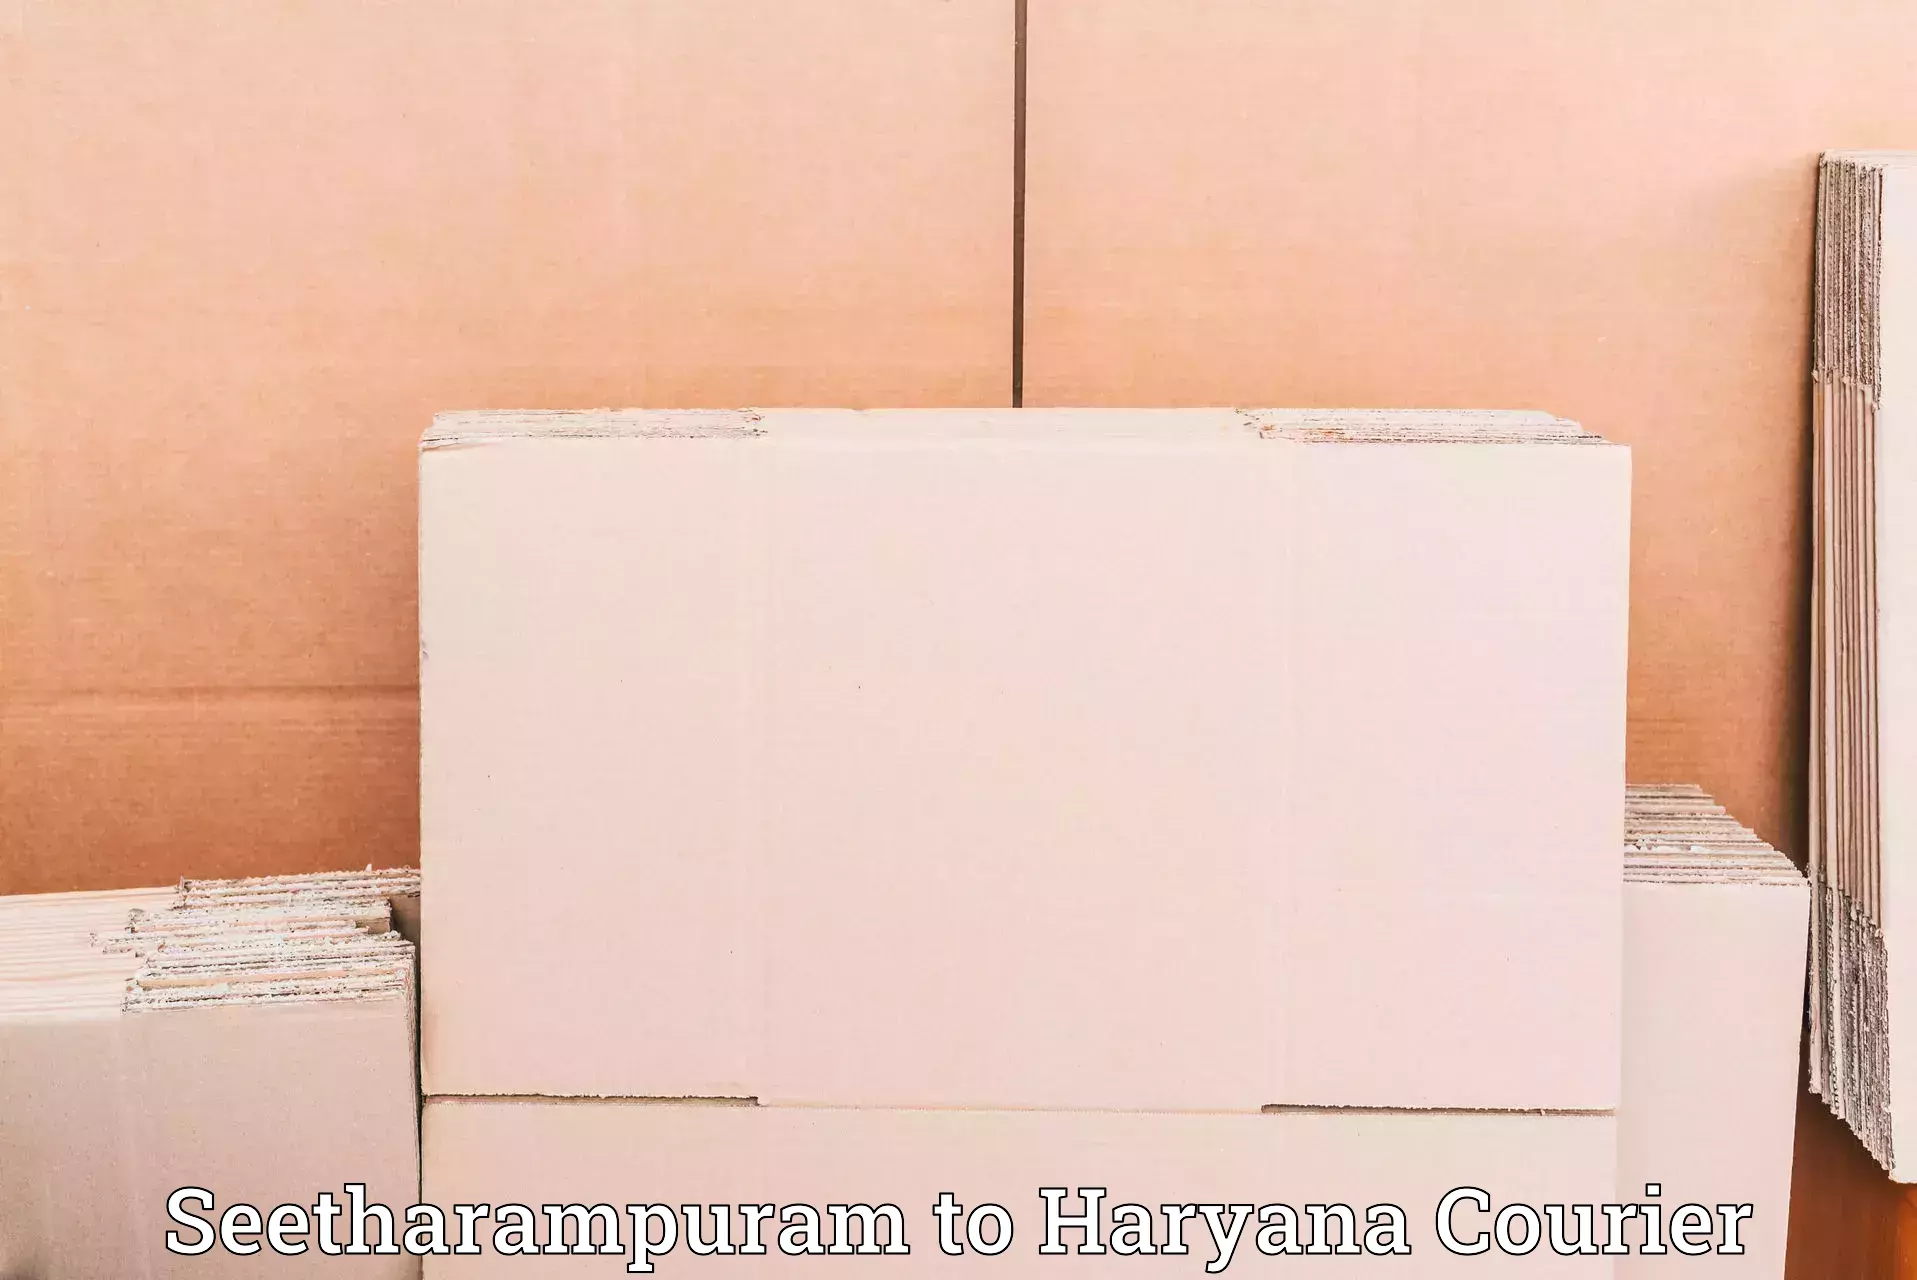 High-capacity shipping options Seetharampuram to Chaudhary Charan Singh Haryana Agricultural University Hisar